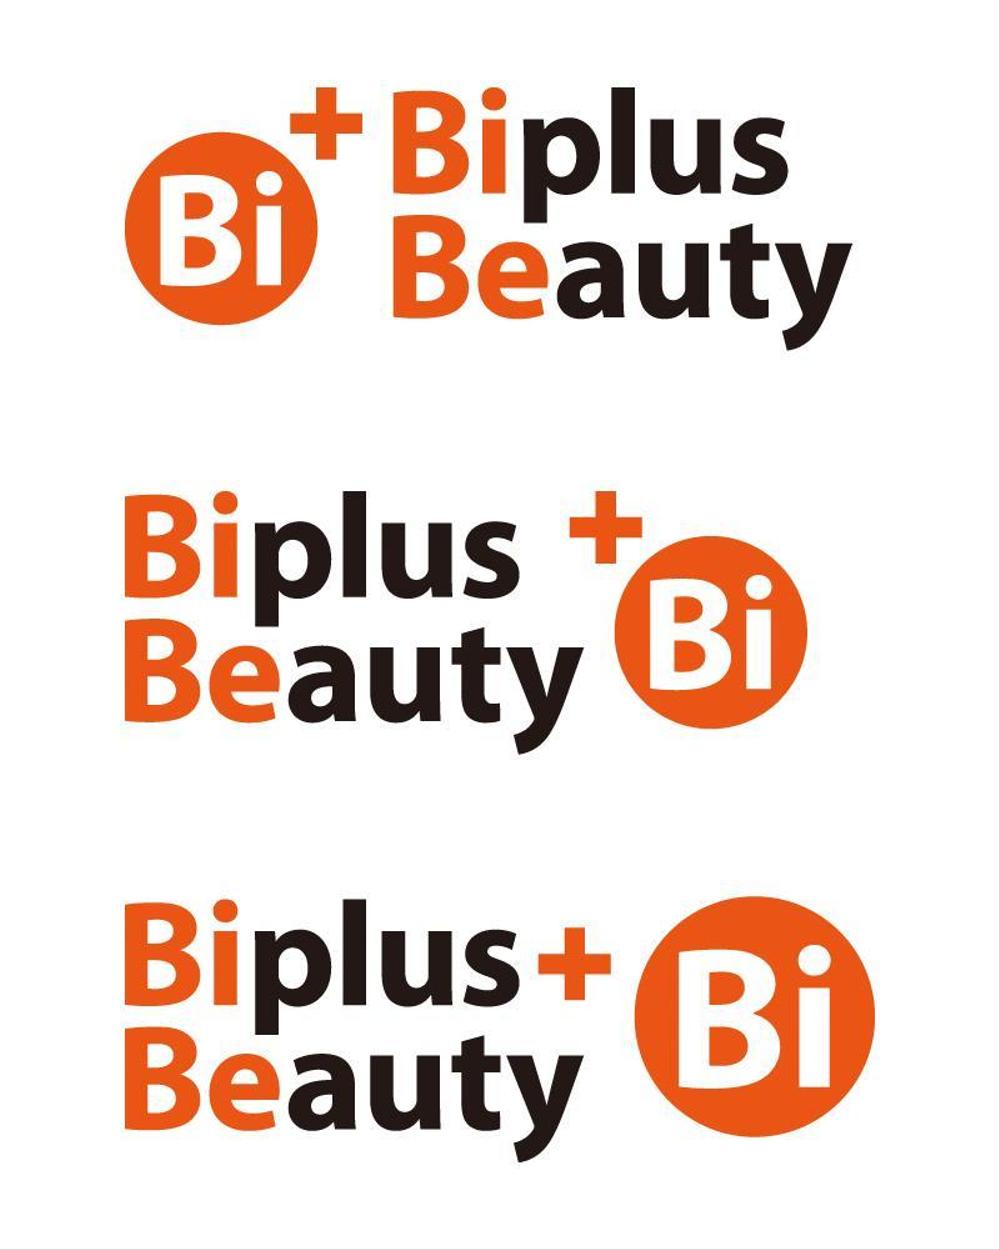 Biplus-Beauty2a.jpg